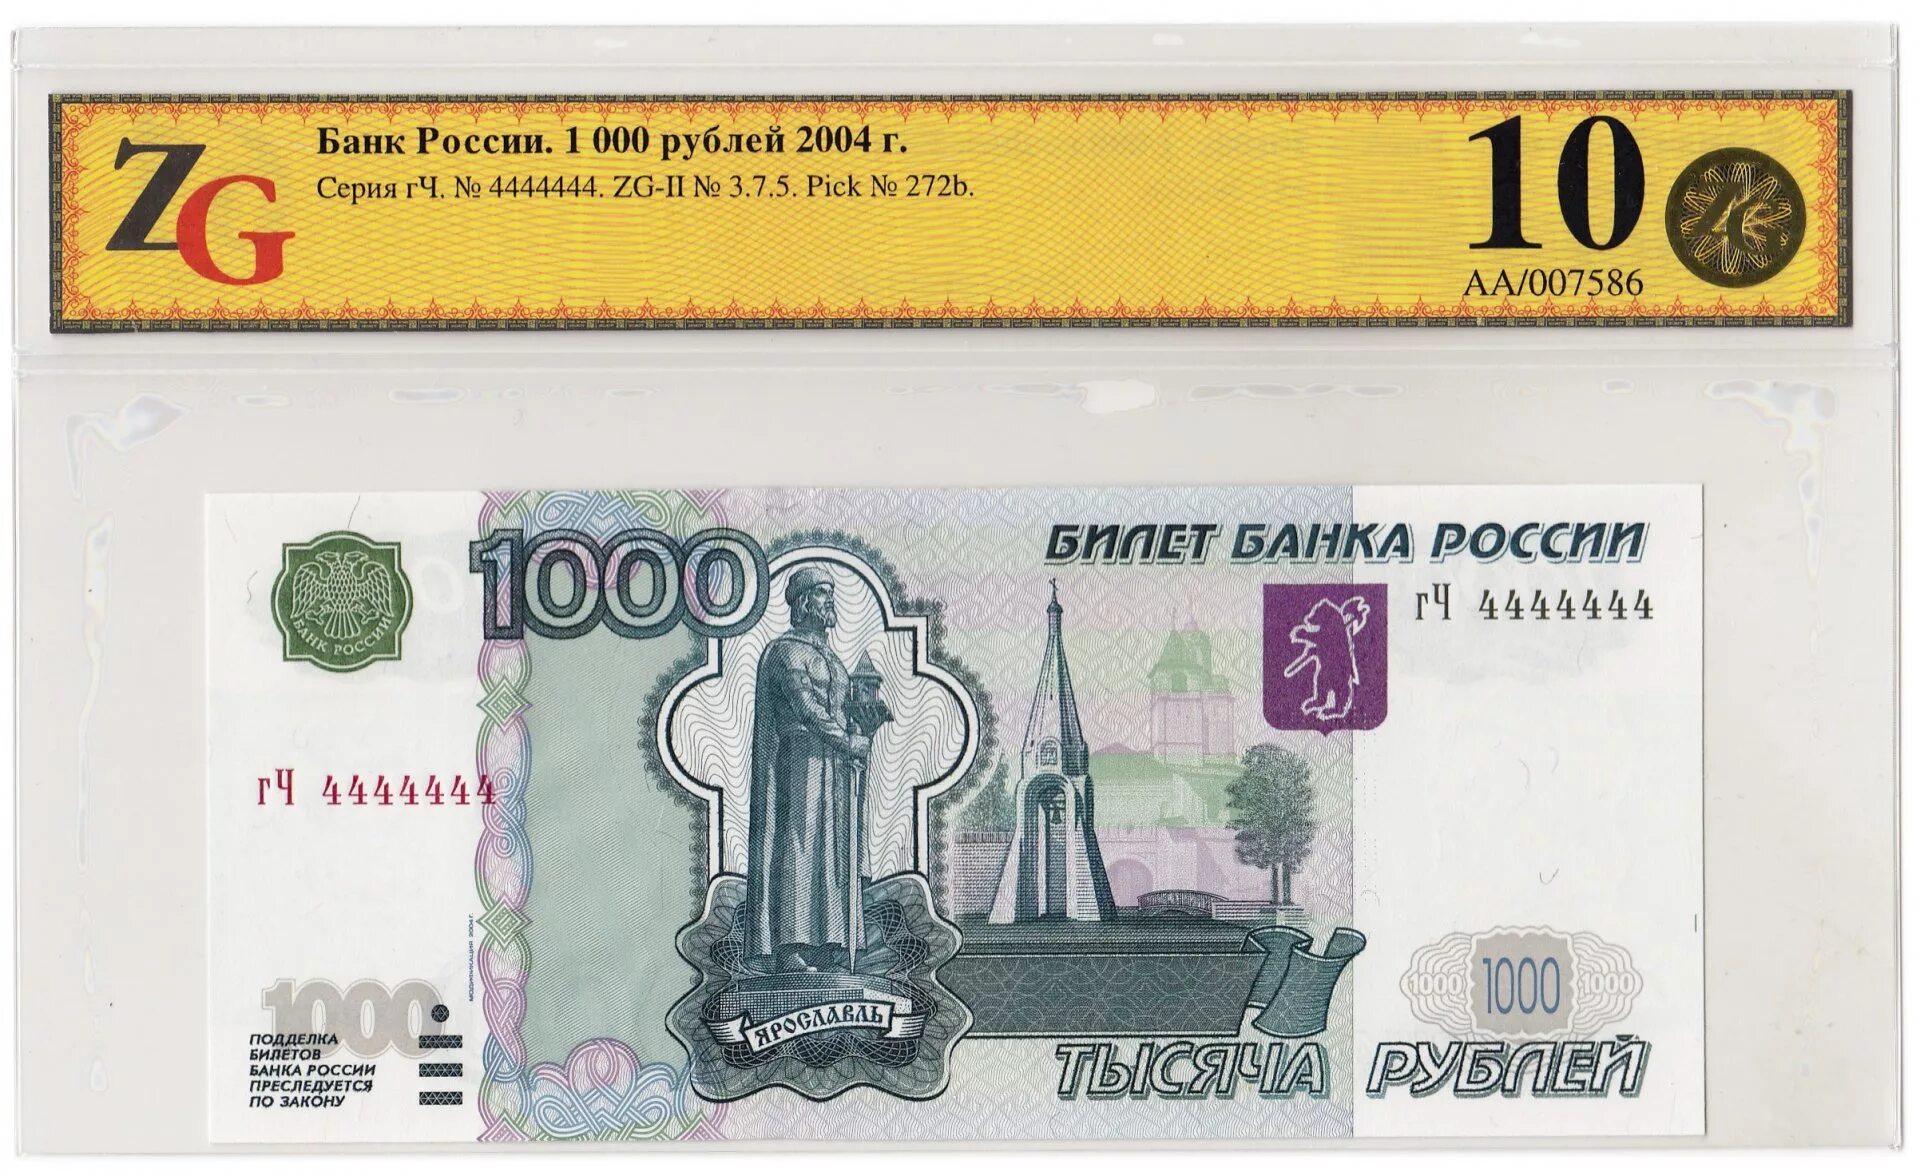 Тысяча российских рублей в долларах. 1000 Рублей 1997 (модификация 2004 года) UNC. 1000 Рублей модификации модифицированная 1997 года. Банкнота 1000 рублей. Билет банка России 1000 рублей.